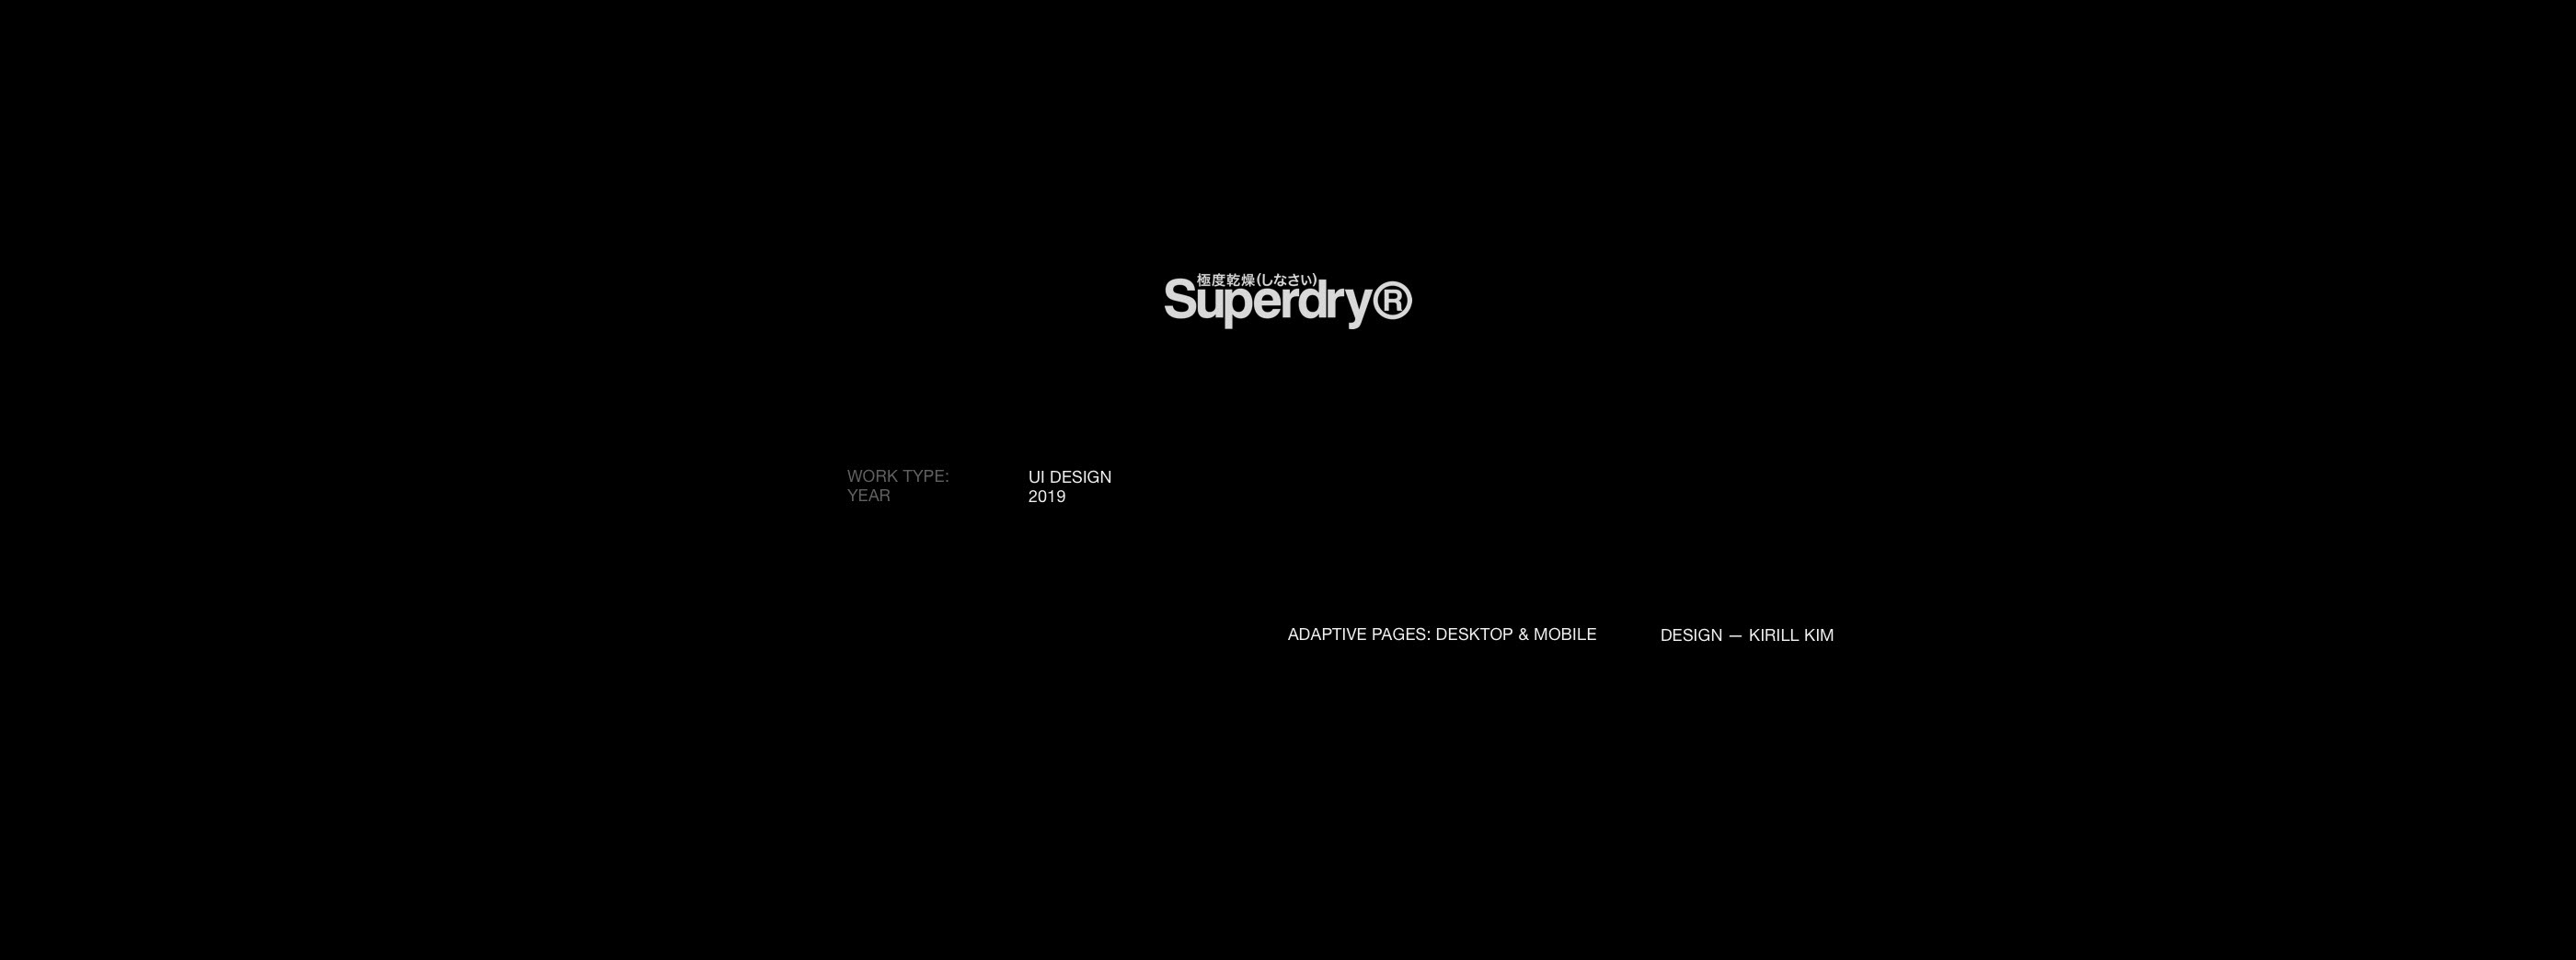 SUPERDRY® — Изображение №1 — Интерфейсы на Dprofile